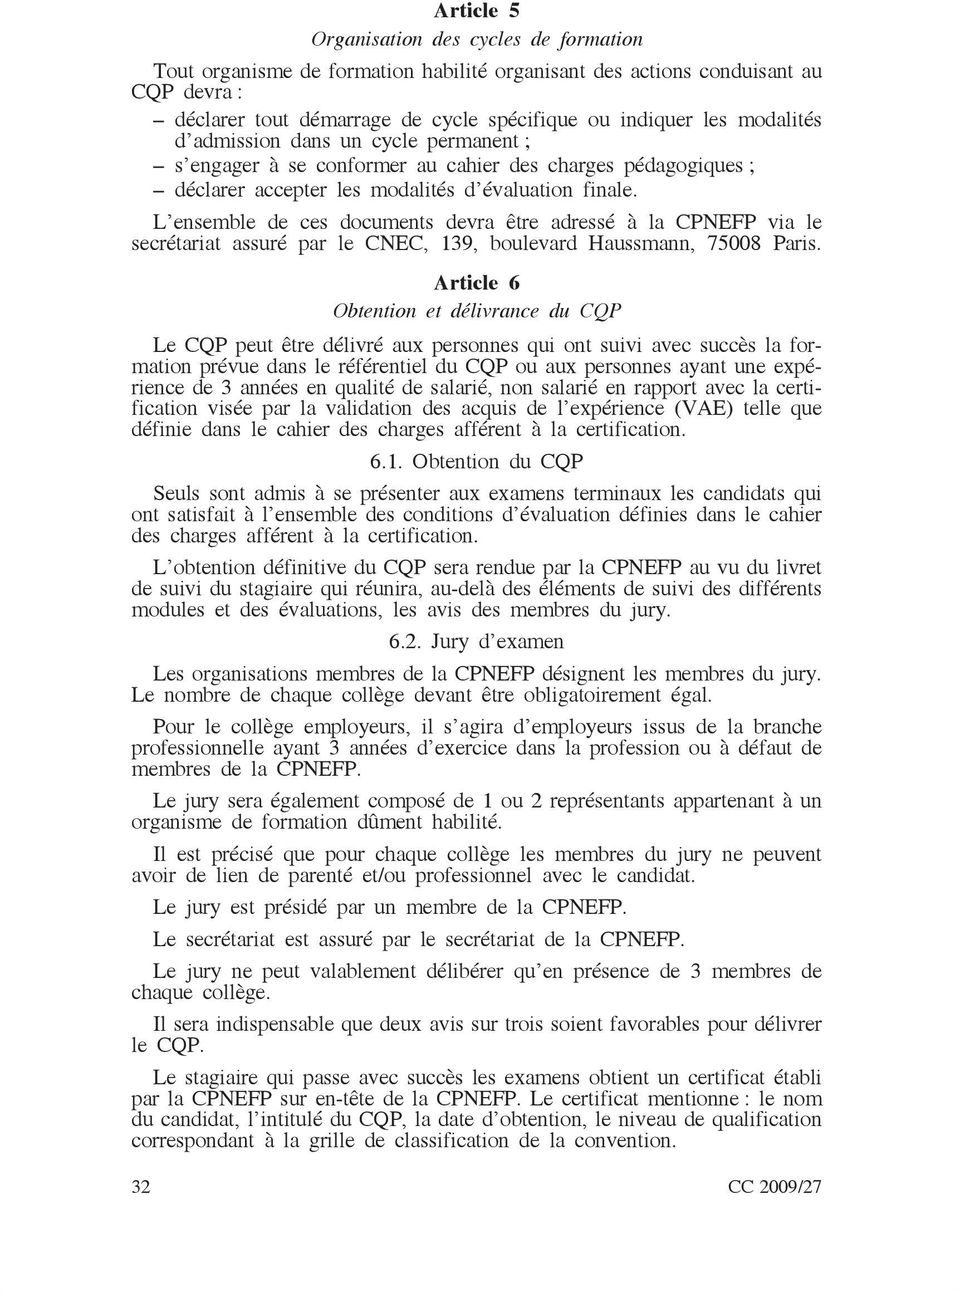 L ensemble de ces documents devra être adressé à la CPNEFP via le secrétariat assuré par le CNEC, 139, boulevard Haussmann, 75008 Paris.